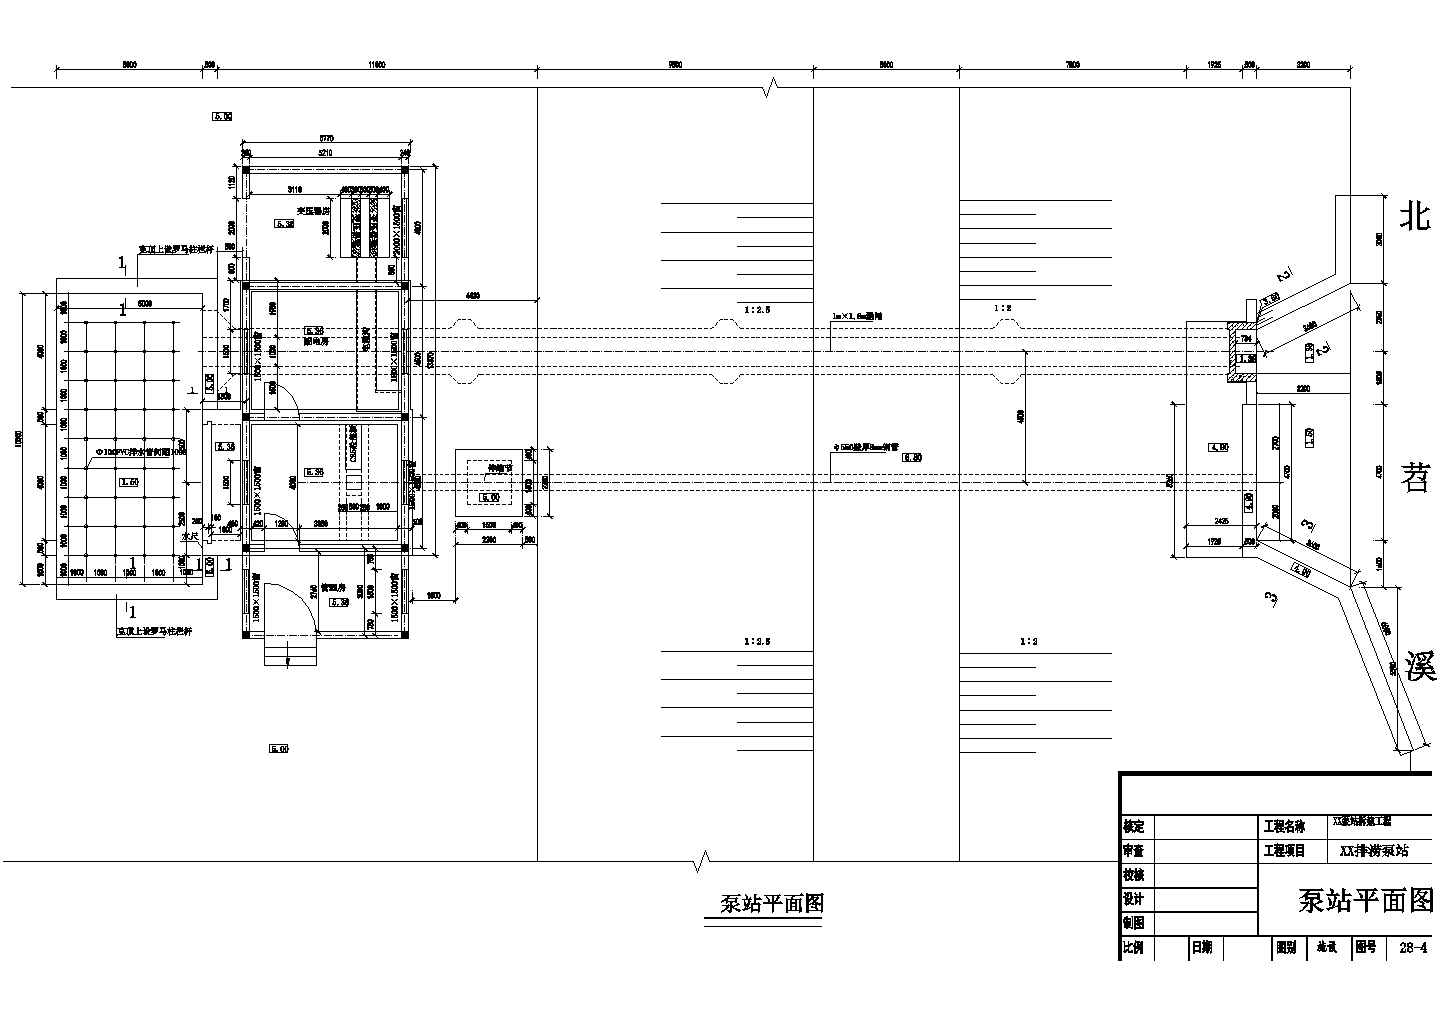 【浙江】某排涝泵站拆建工程全套设计施工图(含电机层平面图)